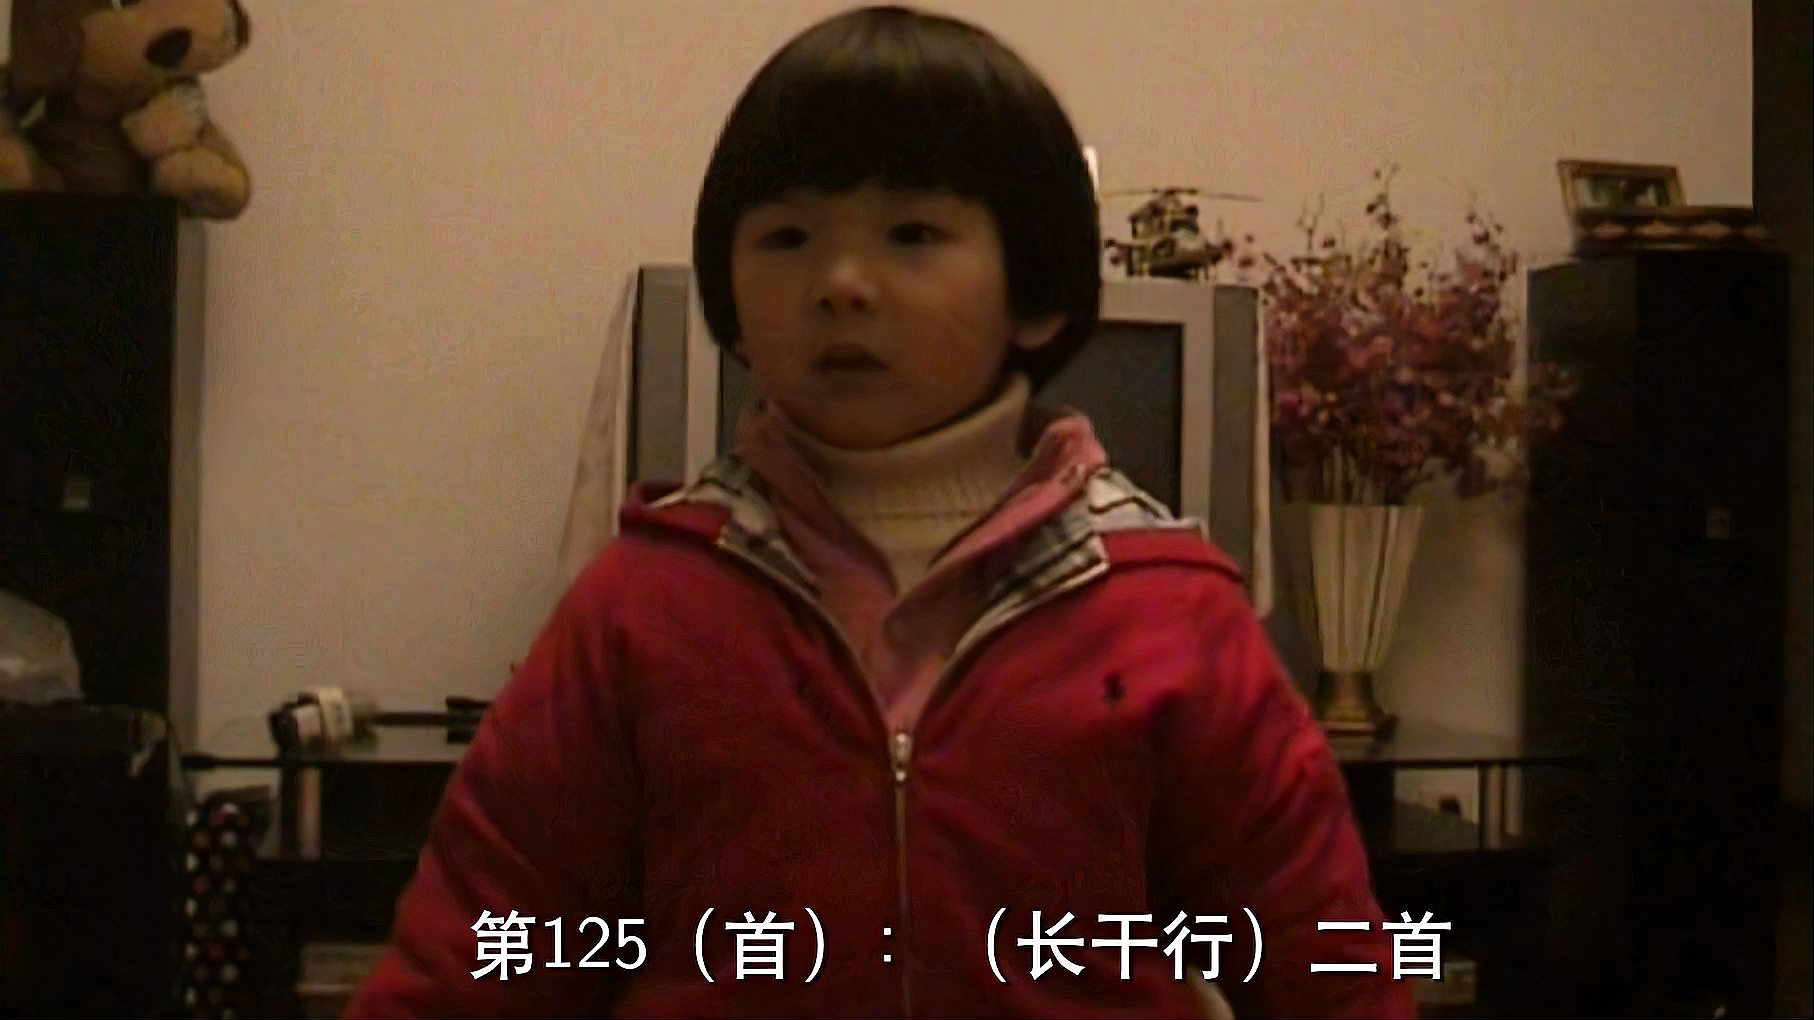 [图]唐诗三百首:第125首(长干曲)崔颢,3岁3月15天#世界纪录创造者